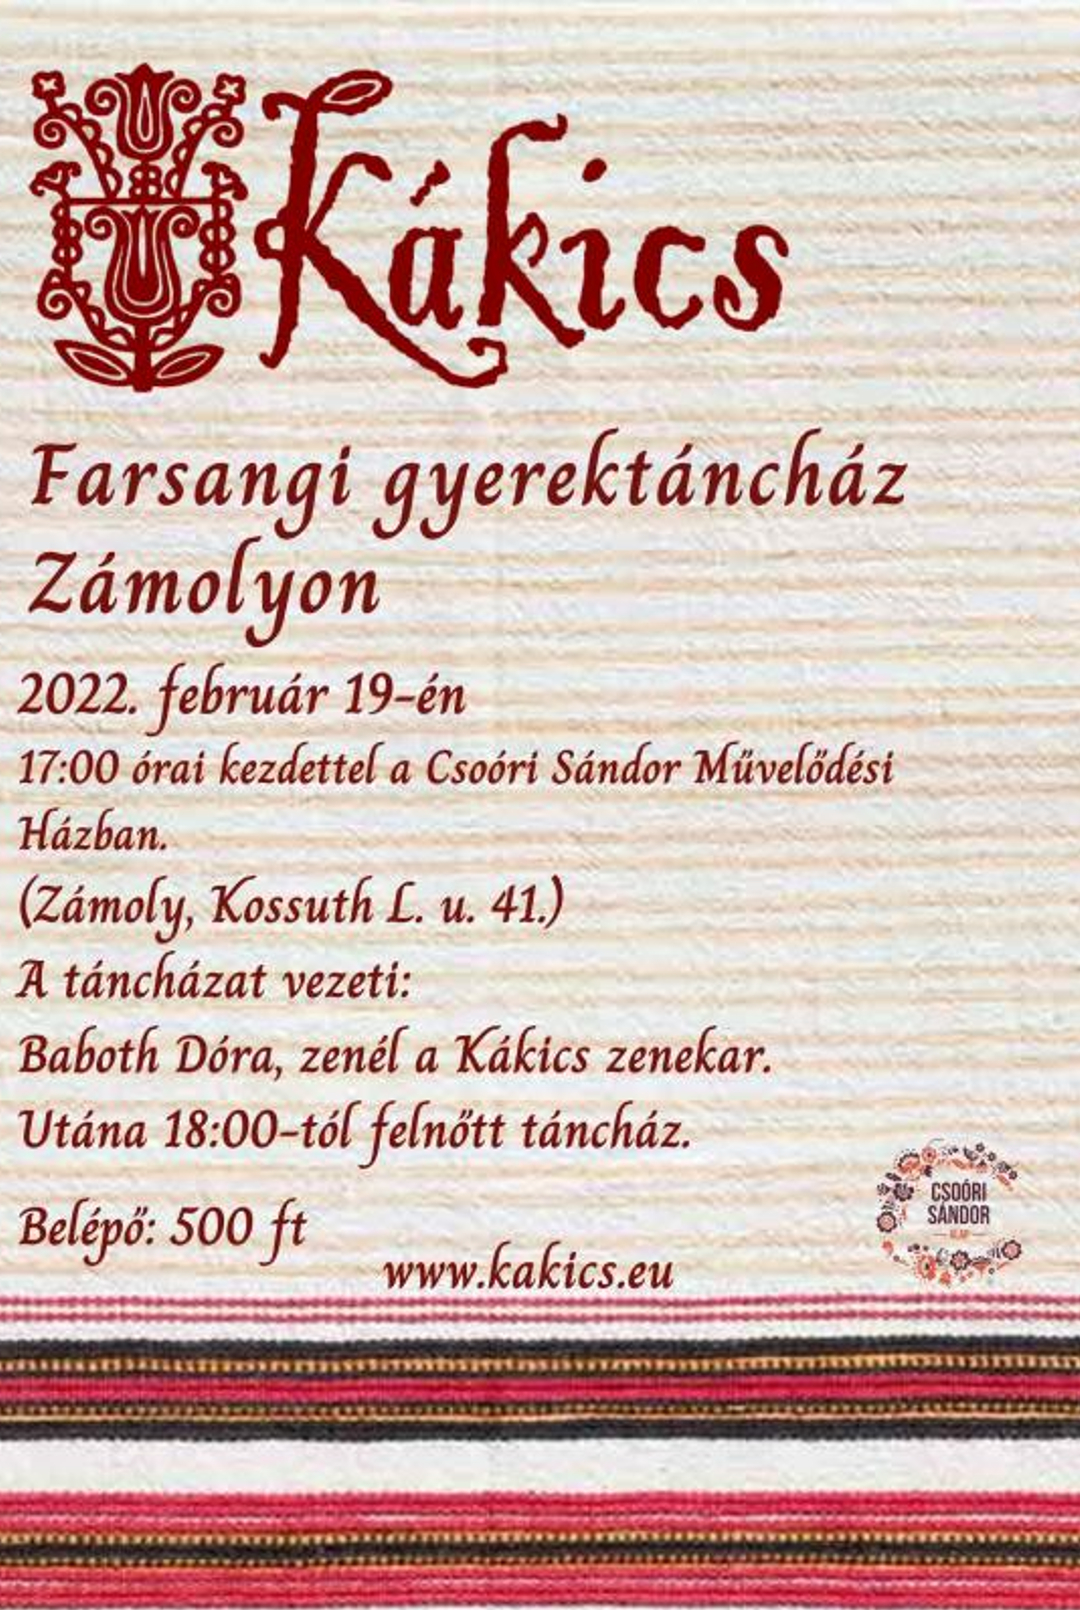 Farsangi családi táncház lesz szombaton Zámolyon, a Kákics együttessel